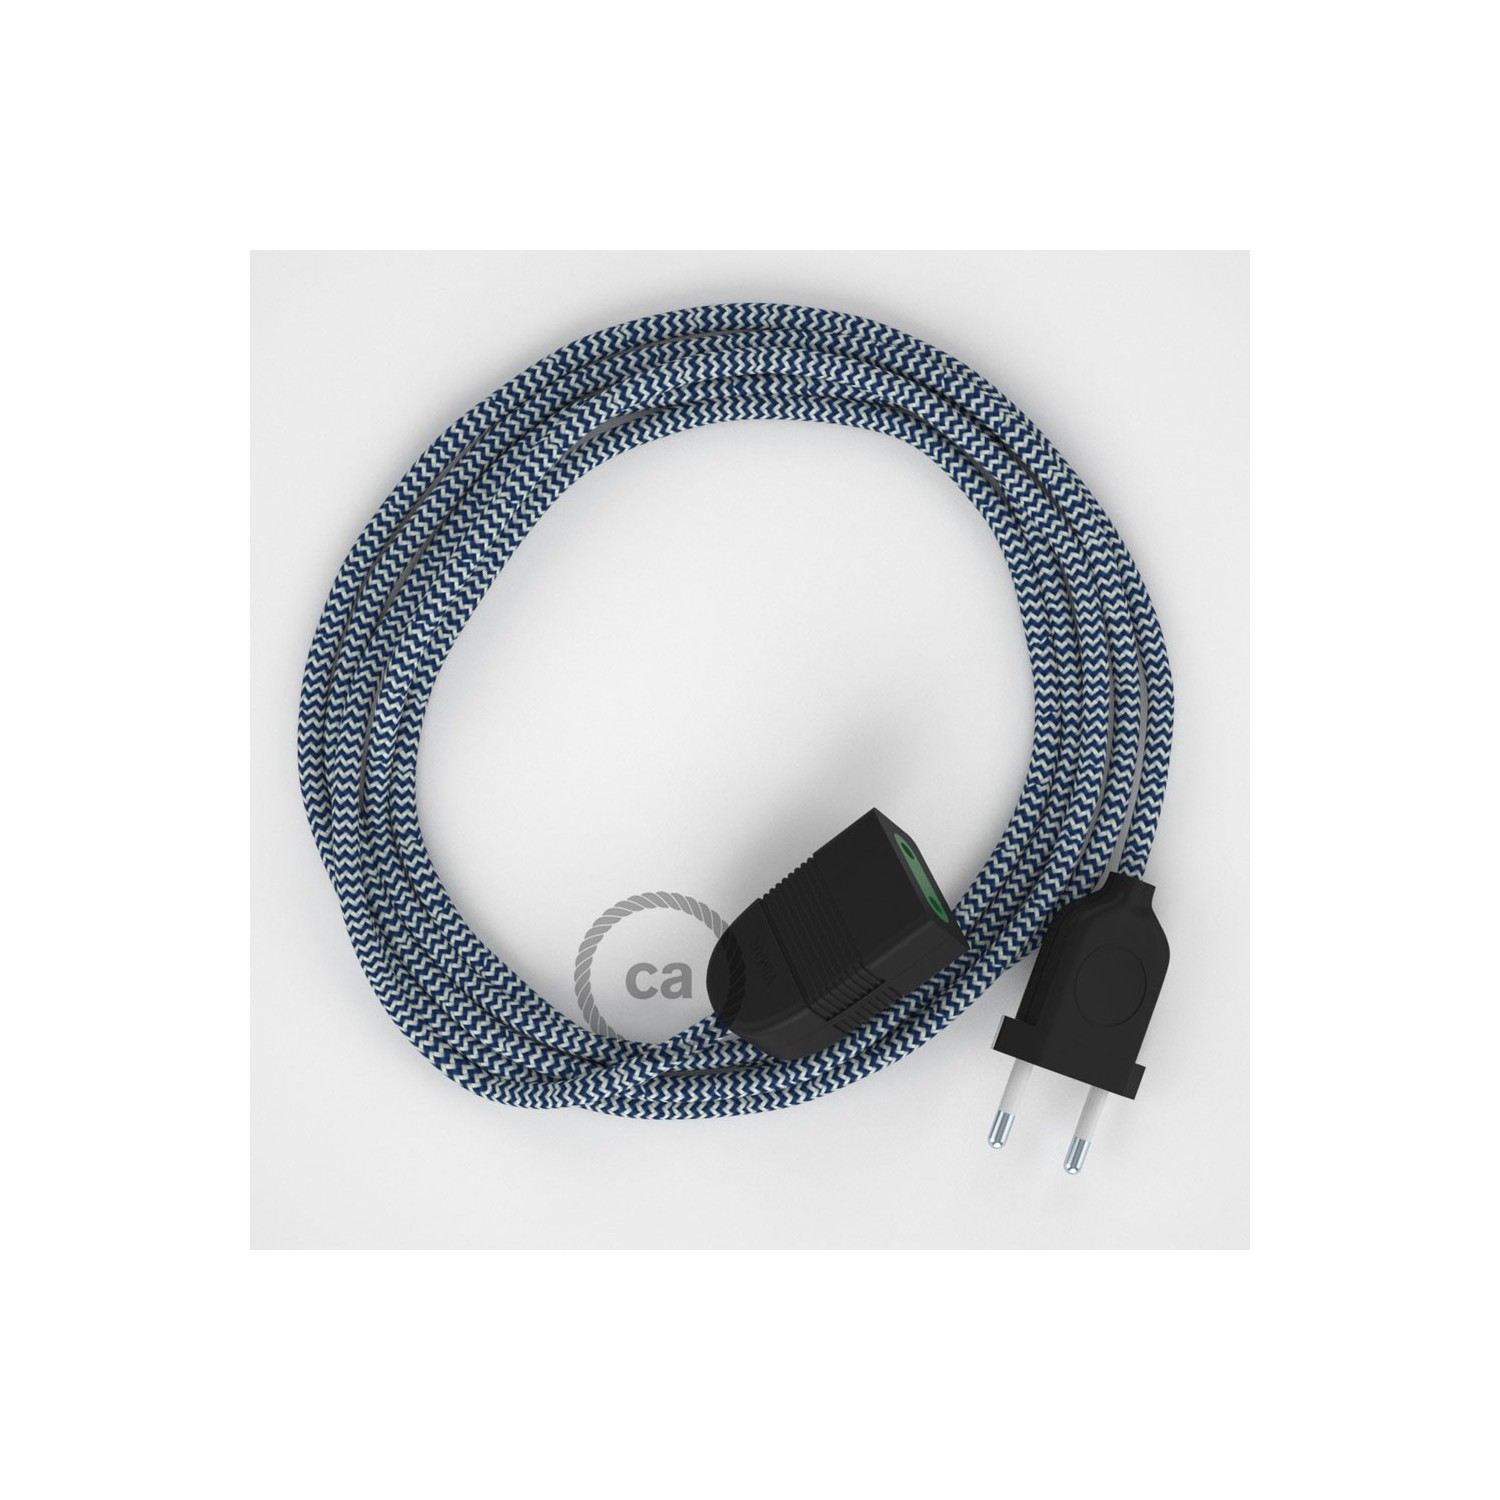 Rallonge électrique avec câble textile RZ12 Effet Soie ZigZag Blanc-Bleu 2P 10A Made in Italy.